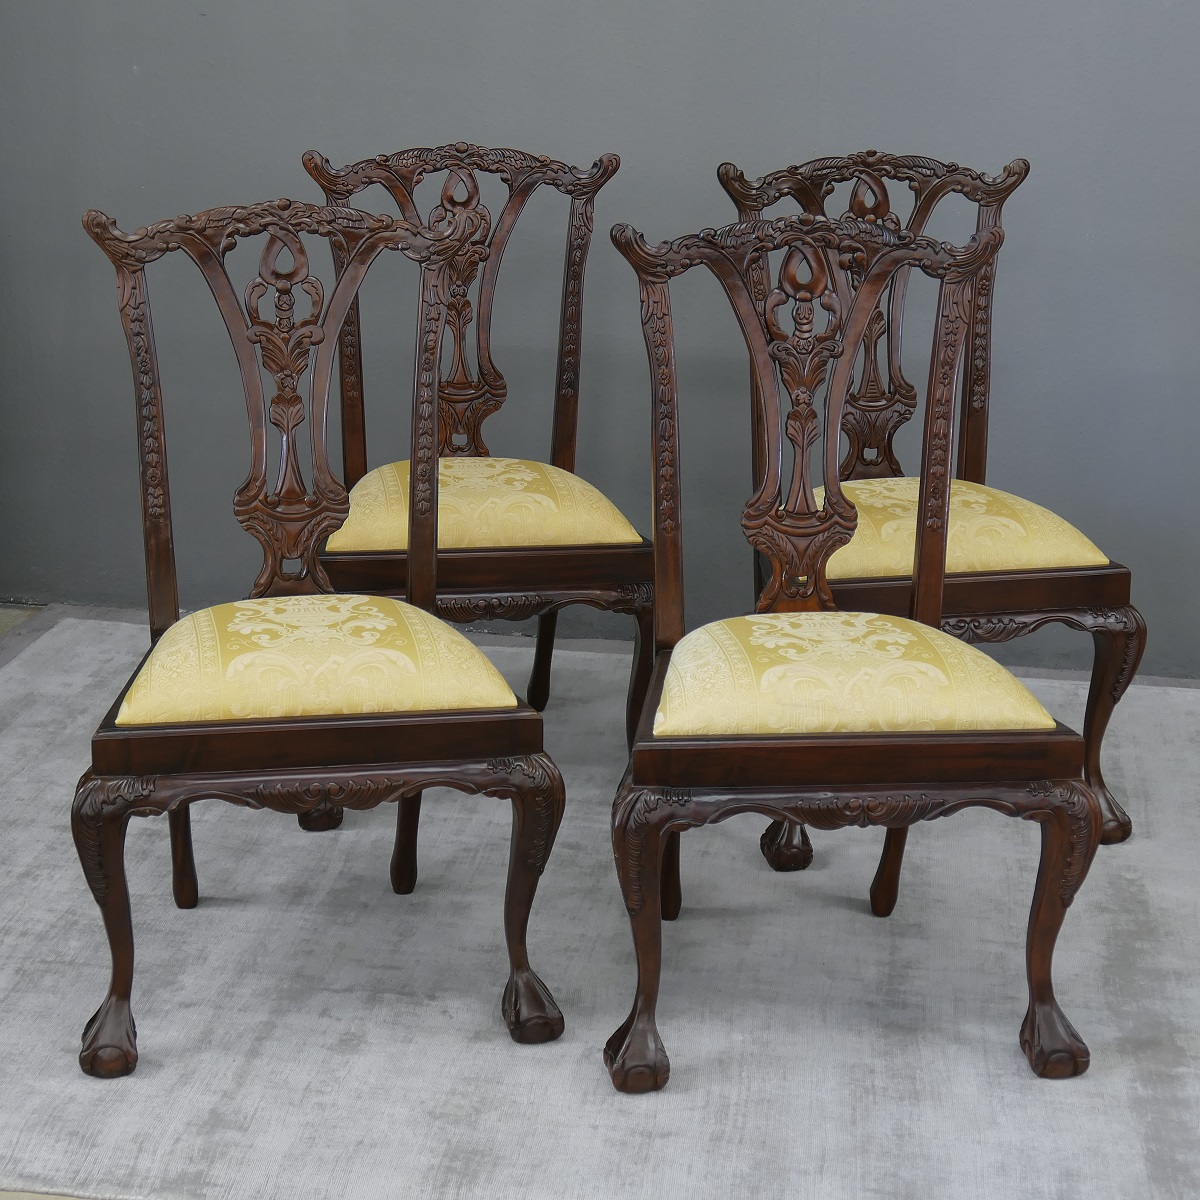 4er Stuhl Set Stühle Polsterstuhl Mahagoni brown Walnuss Bezug: BenHur 151